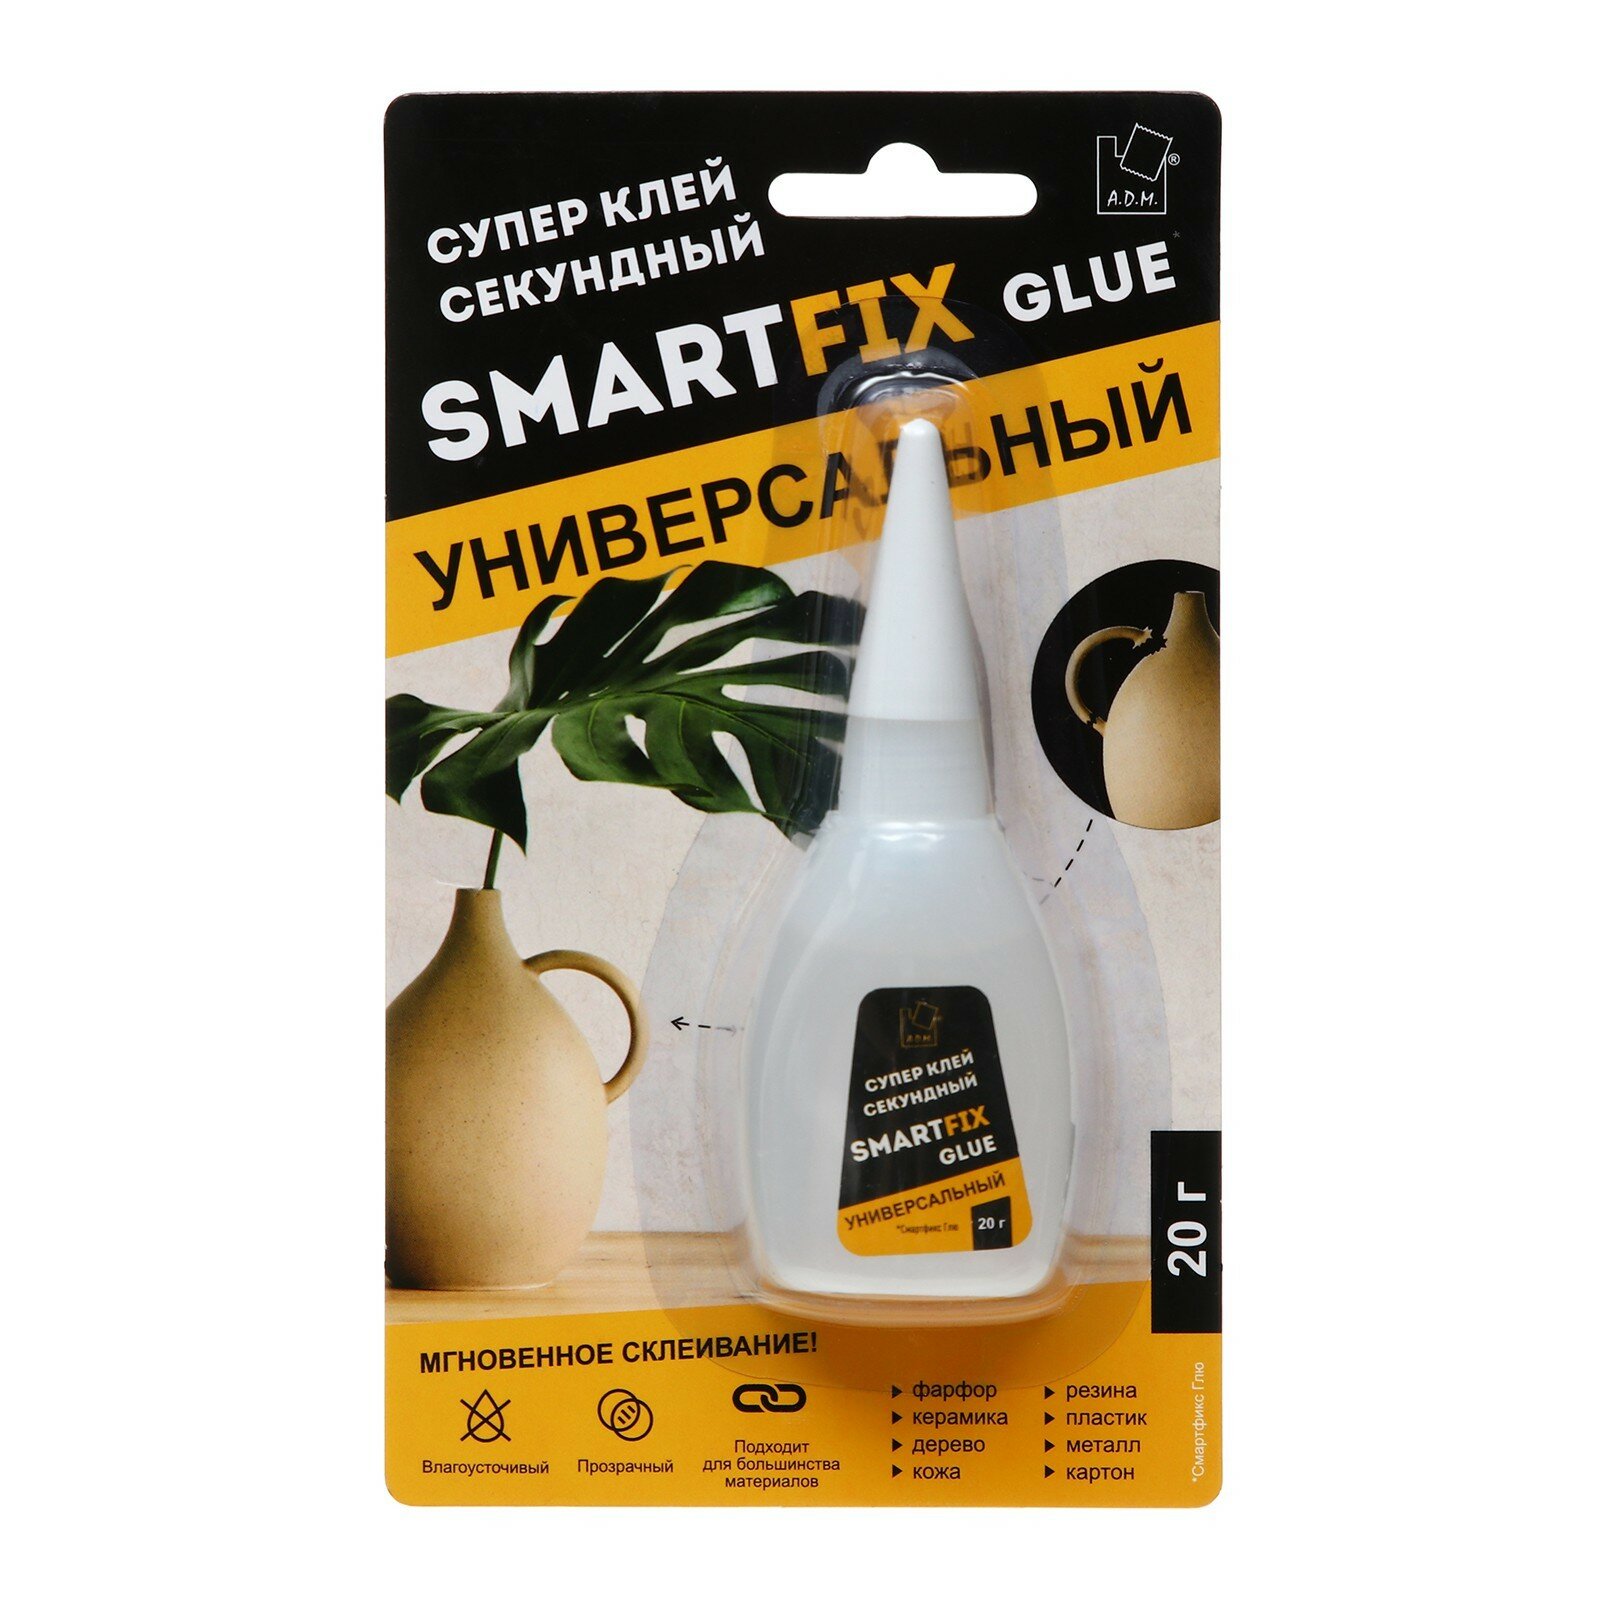 Супер-клей прозрачный универсальный SmartFix GLUE для пластика, фарфора, керамики, кожи, дерева, 20 гр.